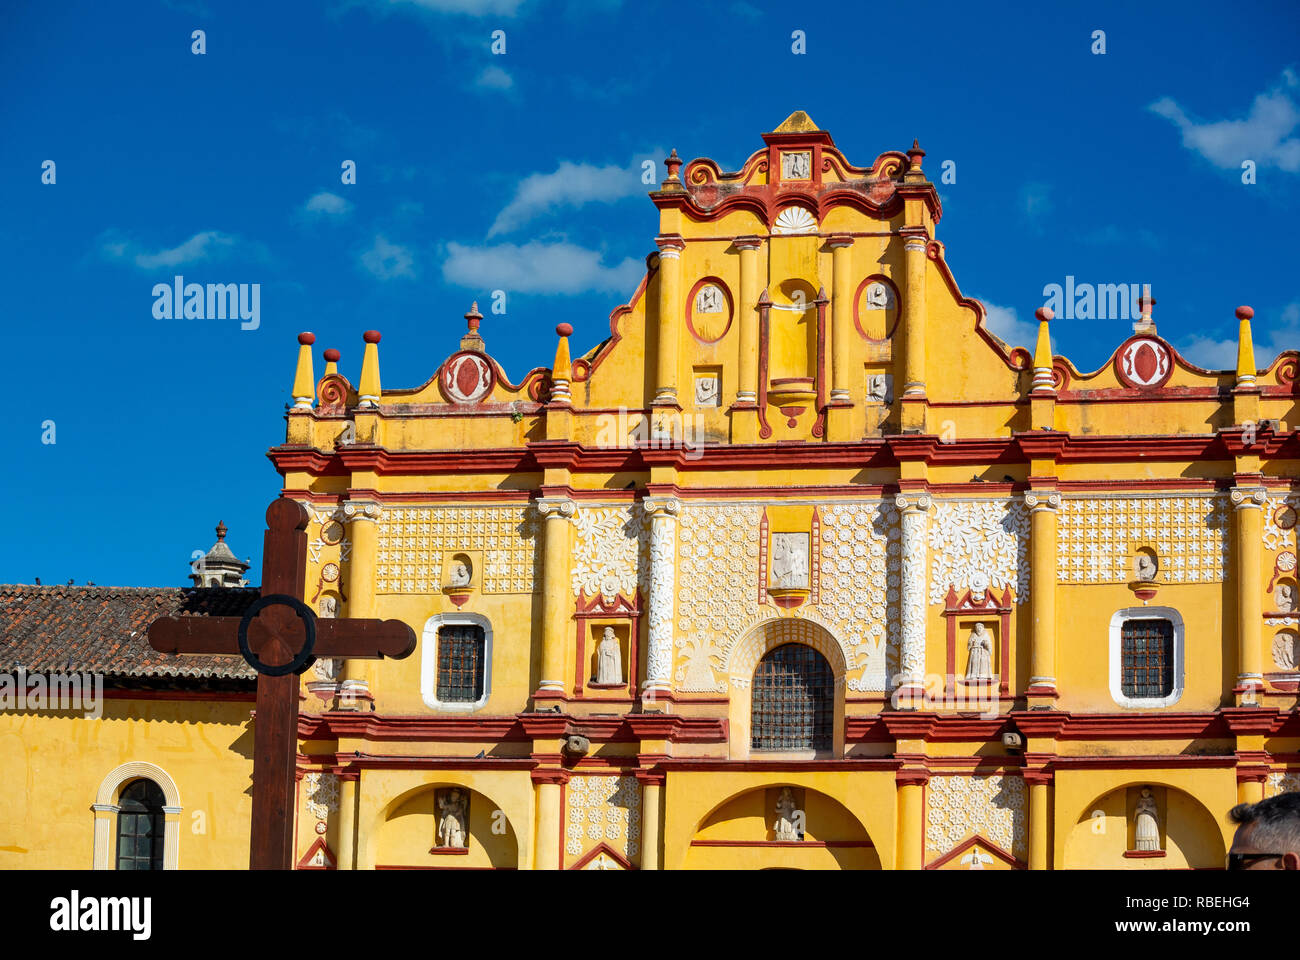 Cathedral, San Cristobal de las Casas, Chiapas, Mexico Stock Photo